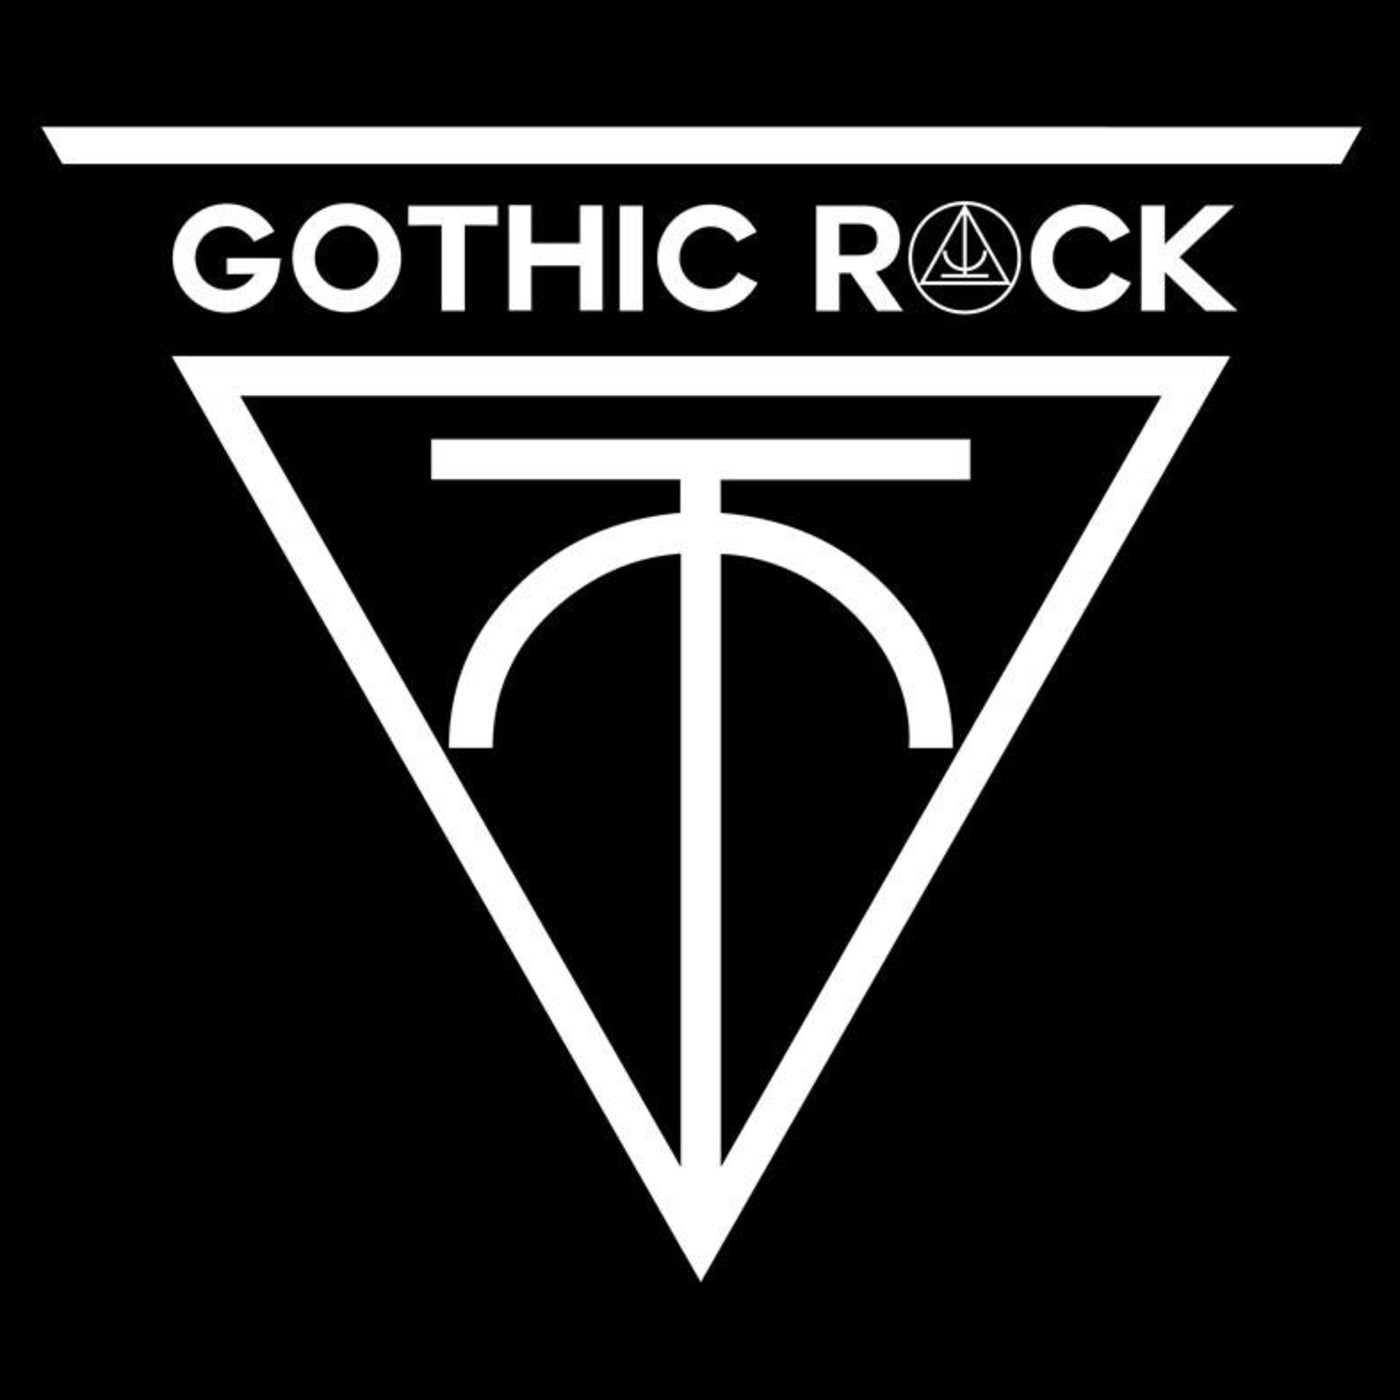 Esto es rock gÓtico 05 (29 septiembre 2017)